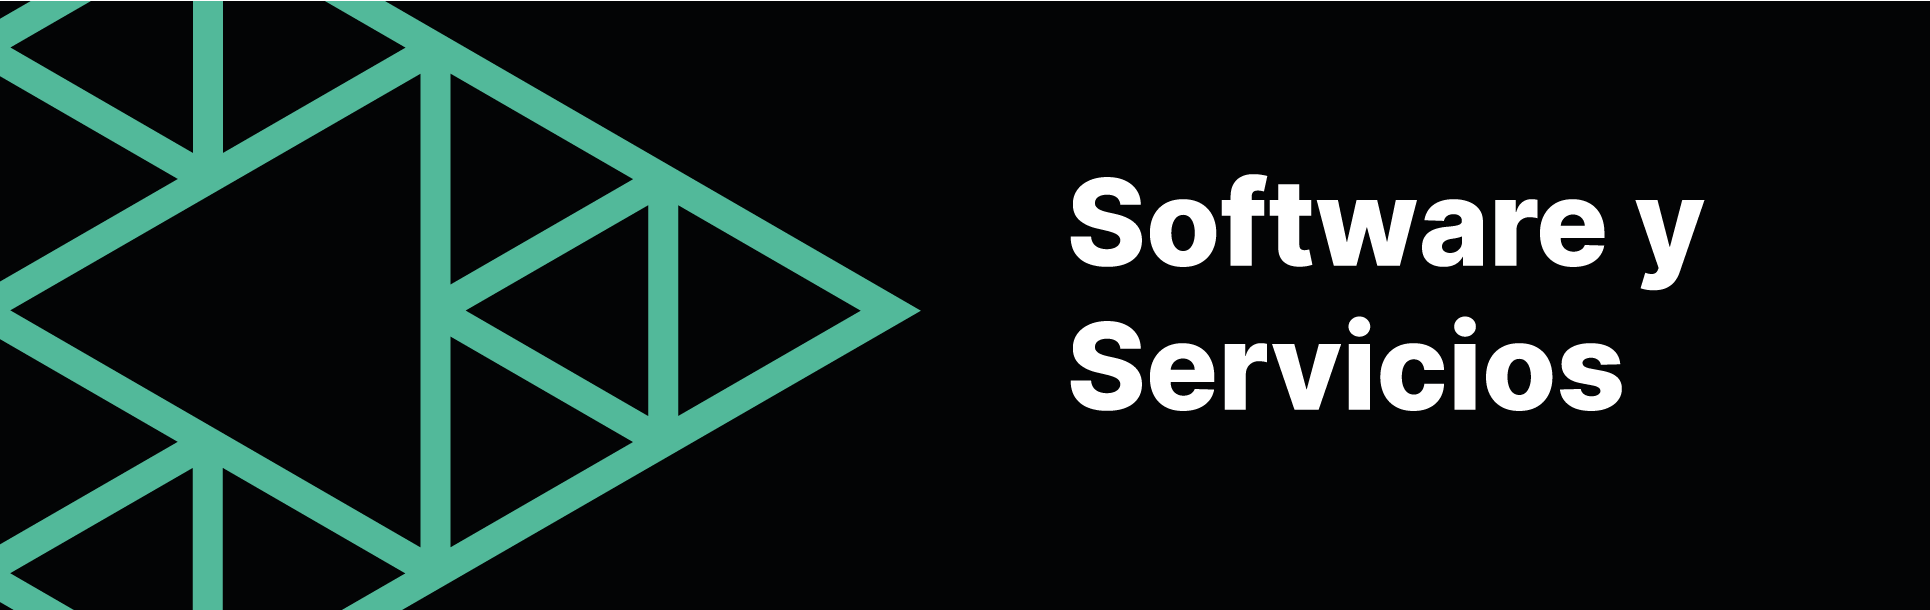 Software-y-Servicios1